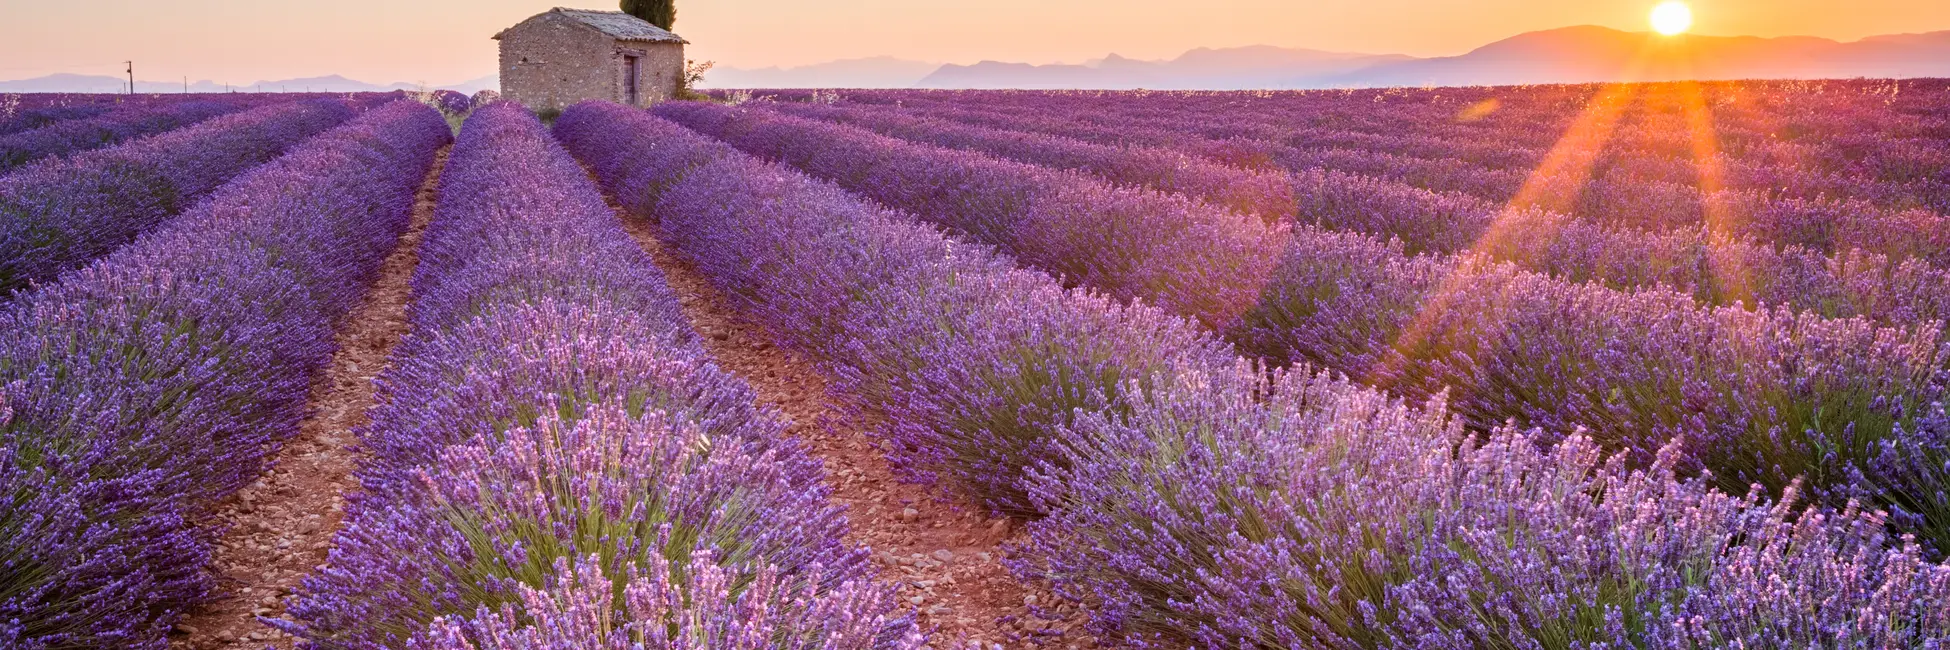 Le coucher du soleil sur la lavande de Provence